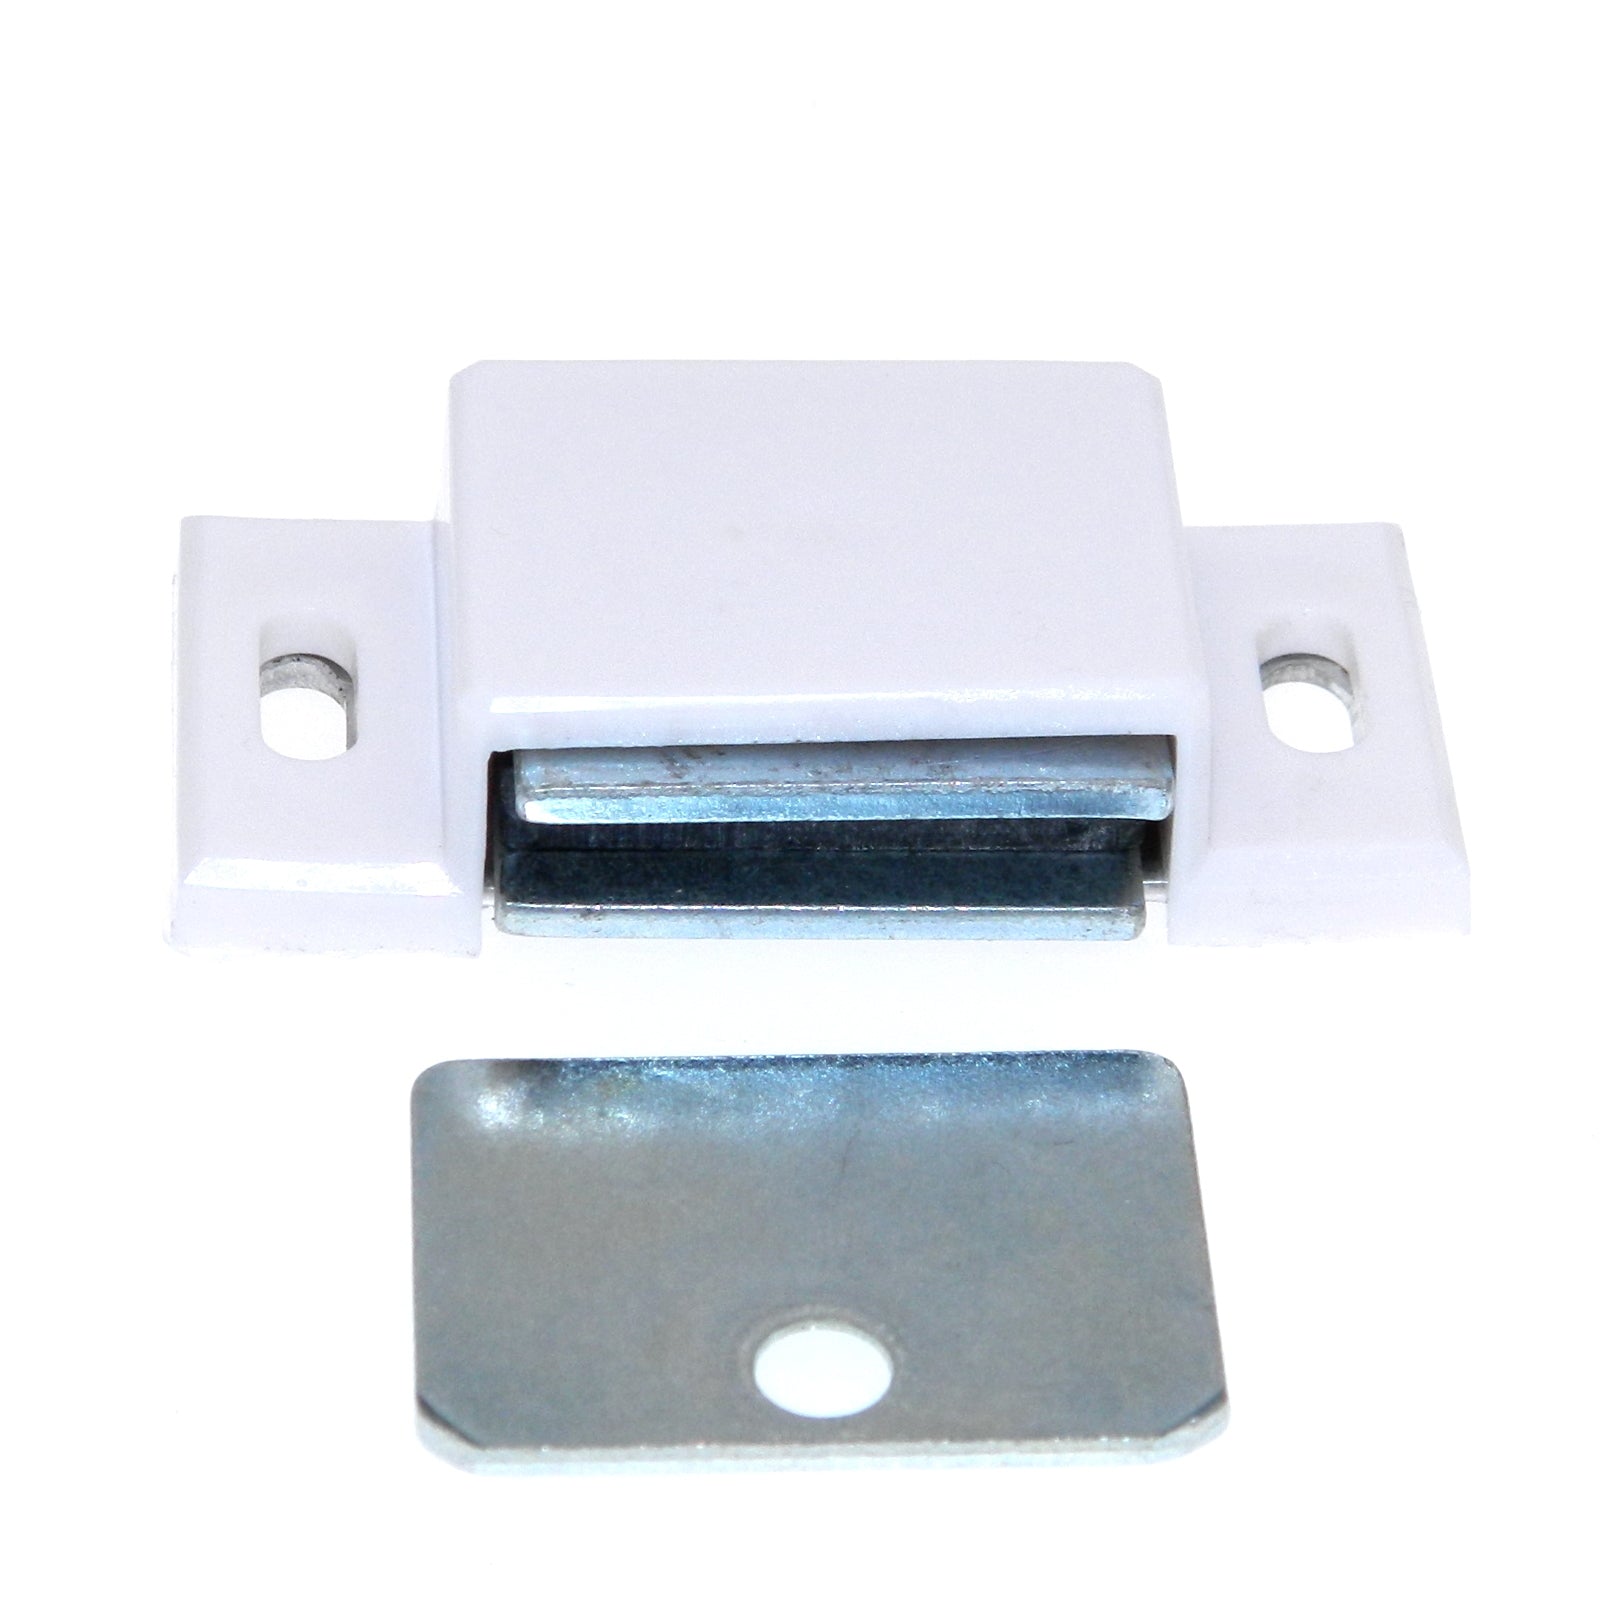 Paquete de 2 cierres magnéticos para puerta de gabinete EPCO #1000, color blanco, 1 1/2"